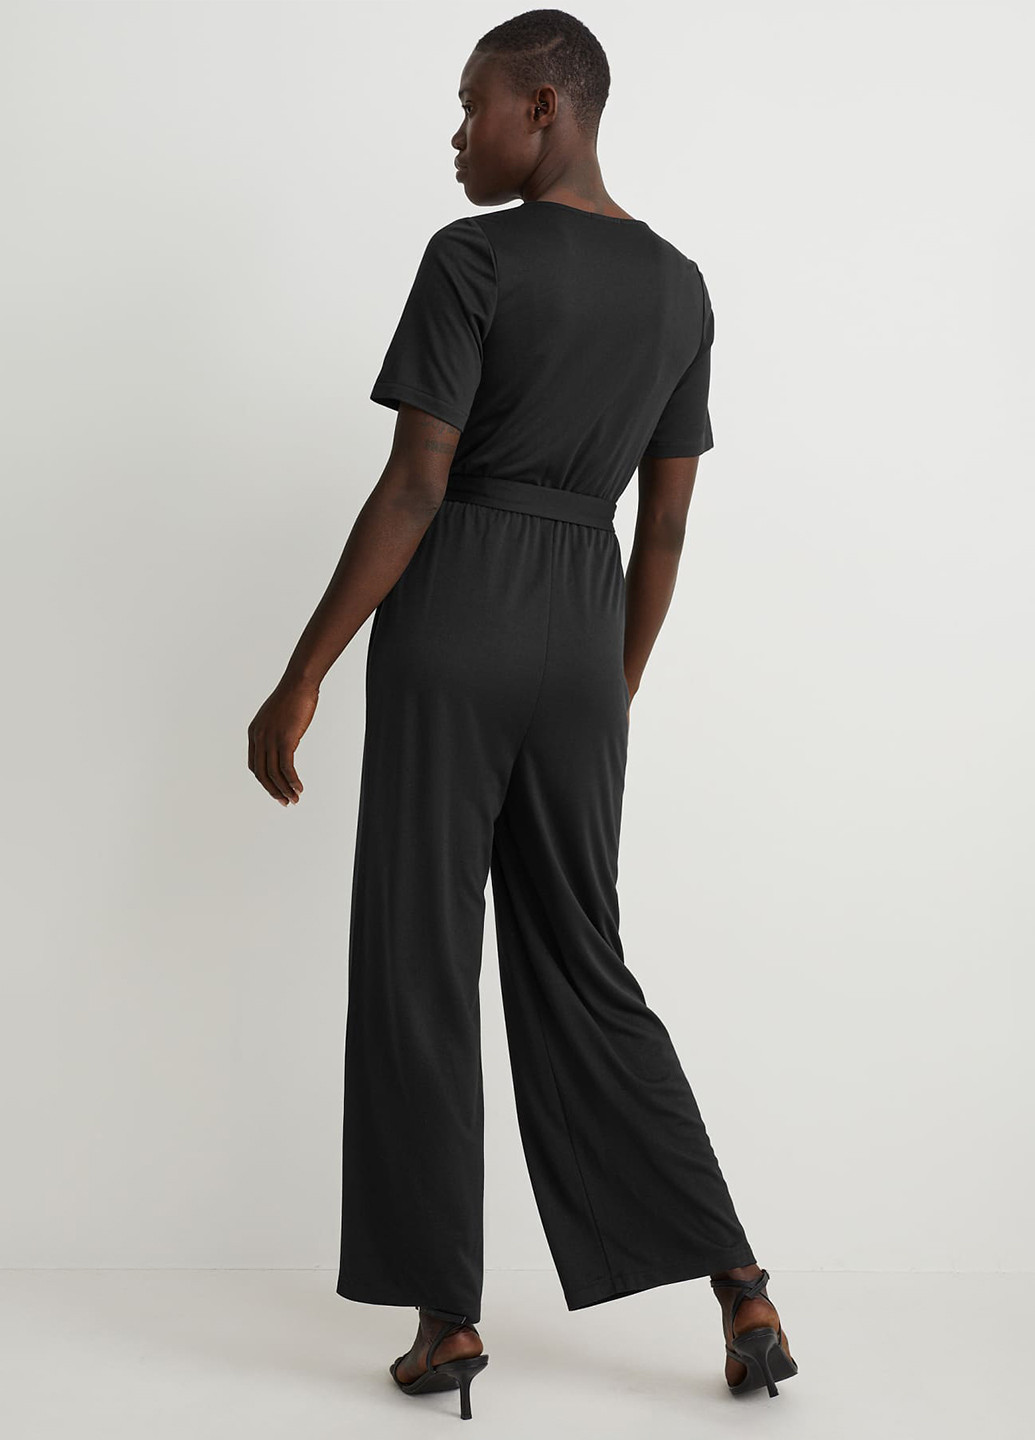 Комбинезон C&A комбинезон-брюки однотонный чёрный кэжуал модал